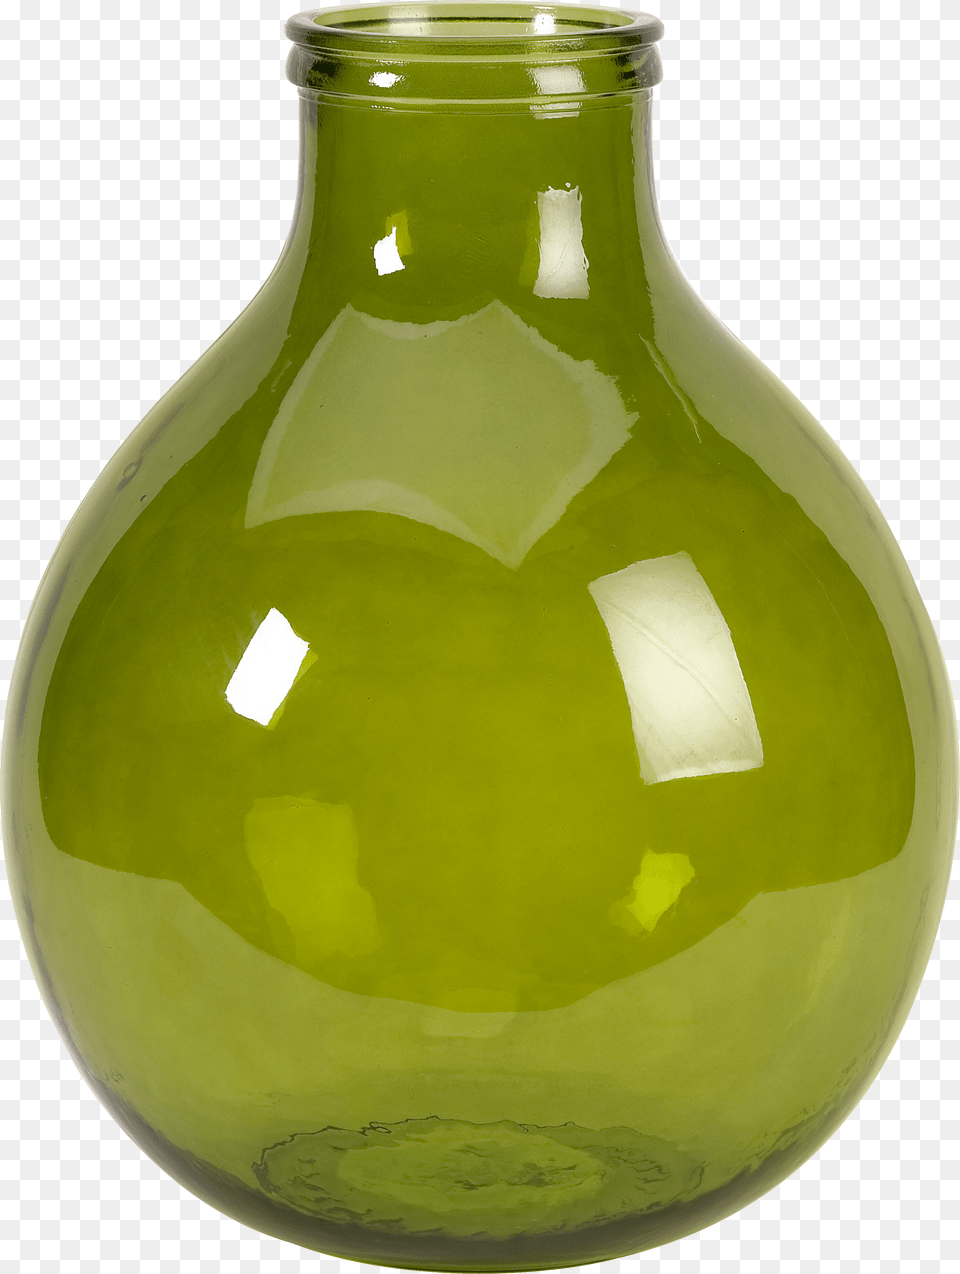 Vase Png Image